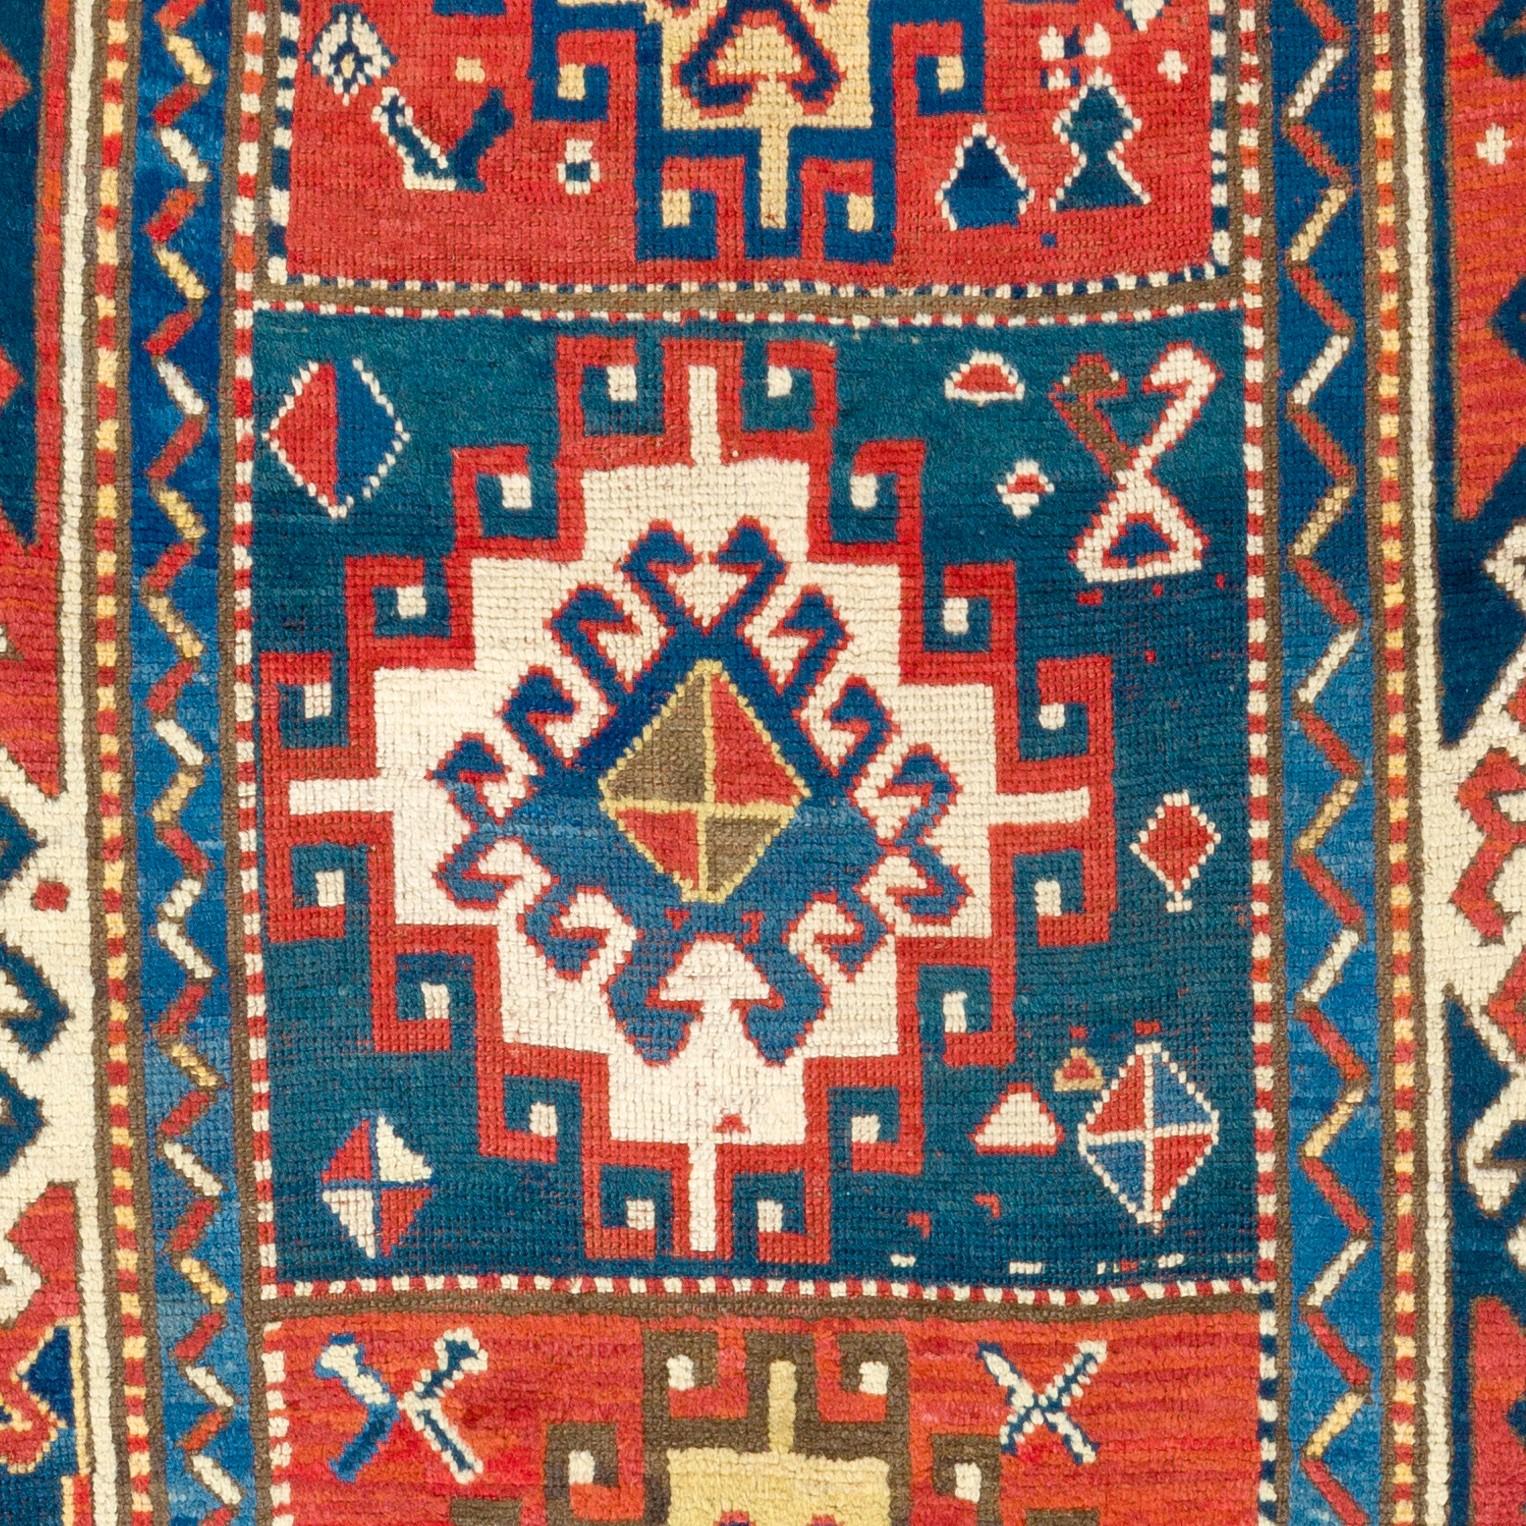 Hand-Knotted 4x7.3 ft Antique Caucasian Bordjalou Kazak Rug. Top Shelf Collectors Carpet For Sale